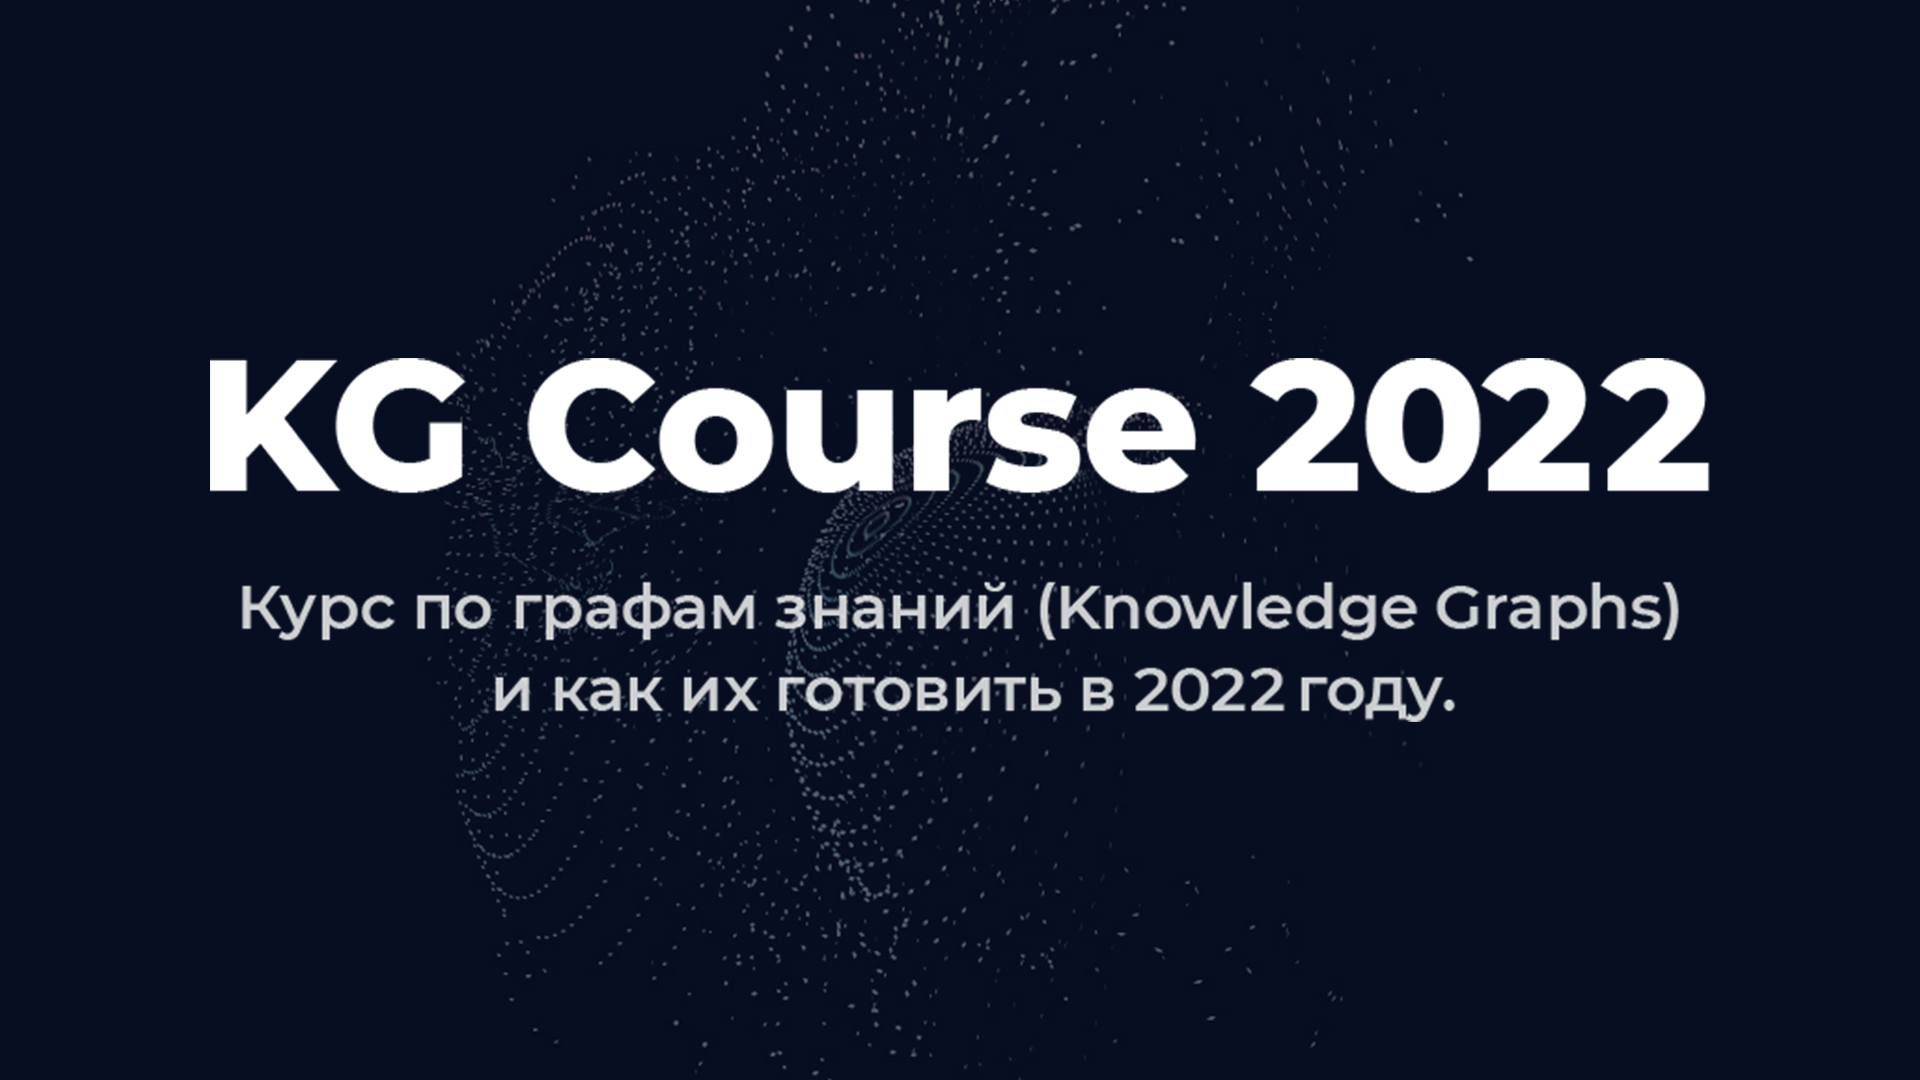 KG Course 2022